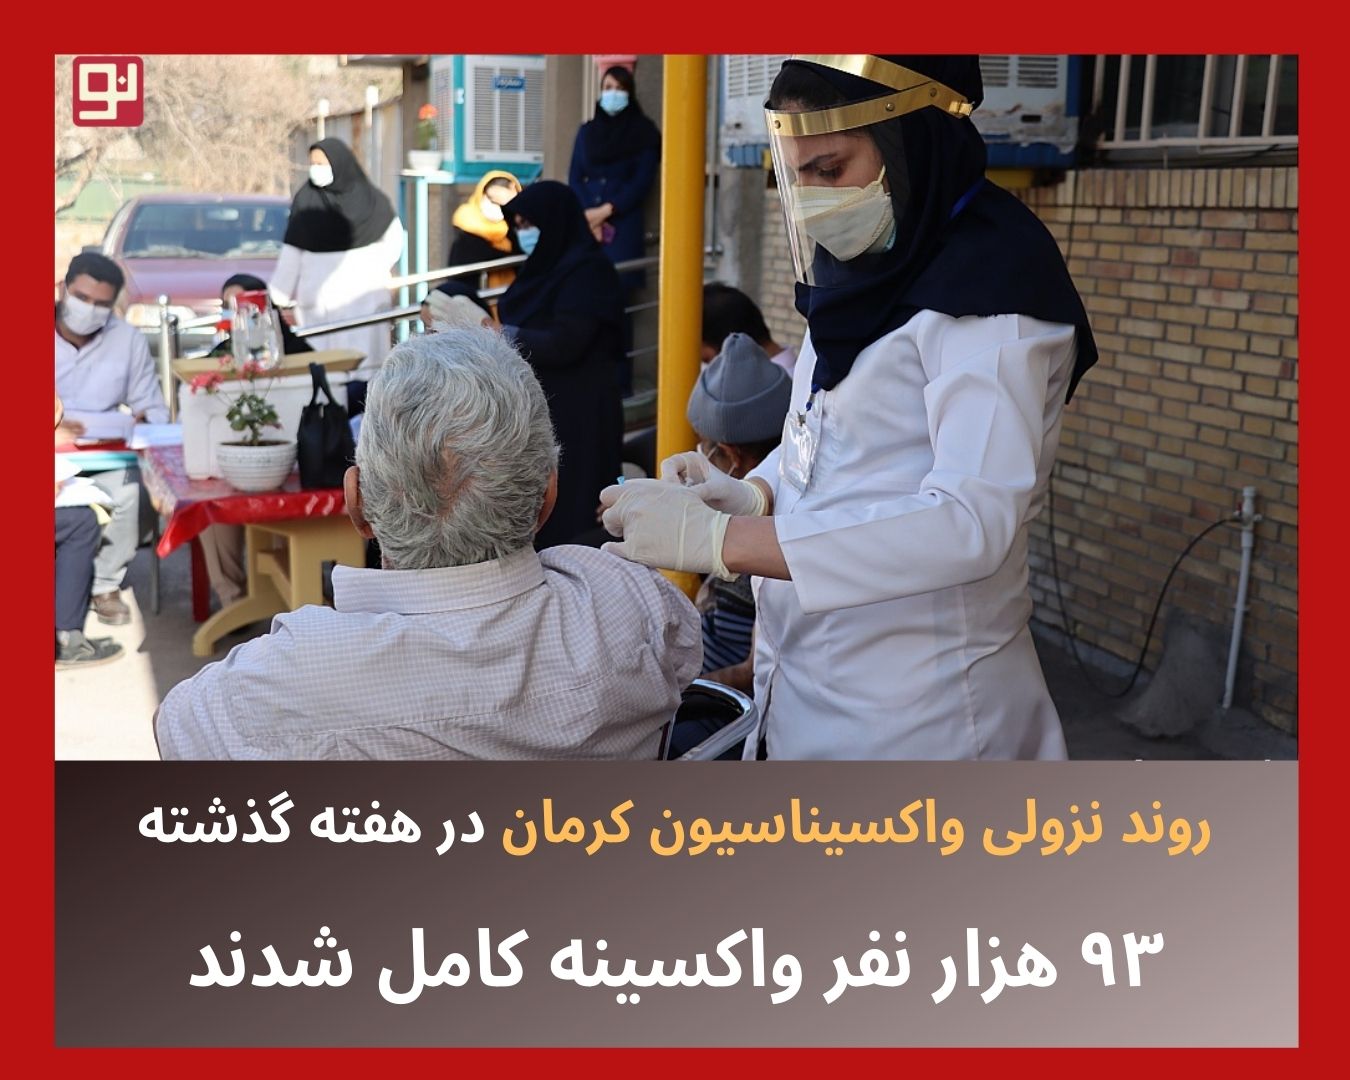 واکسیناسیون کرونا در کرمان